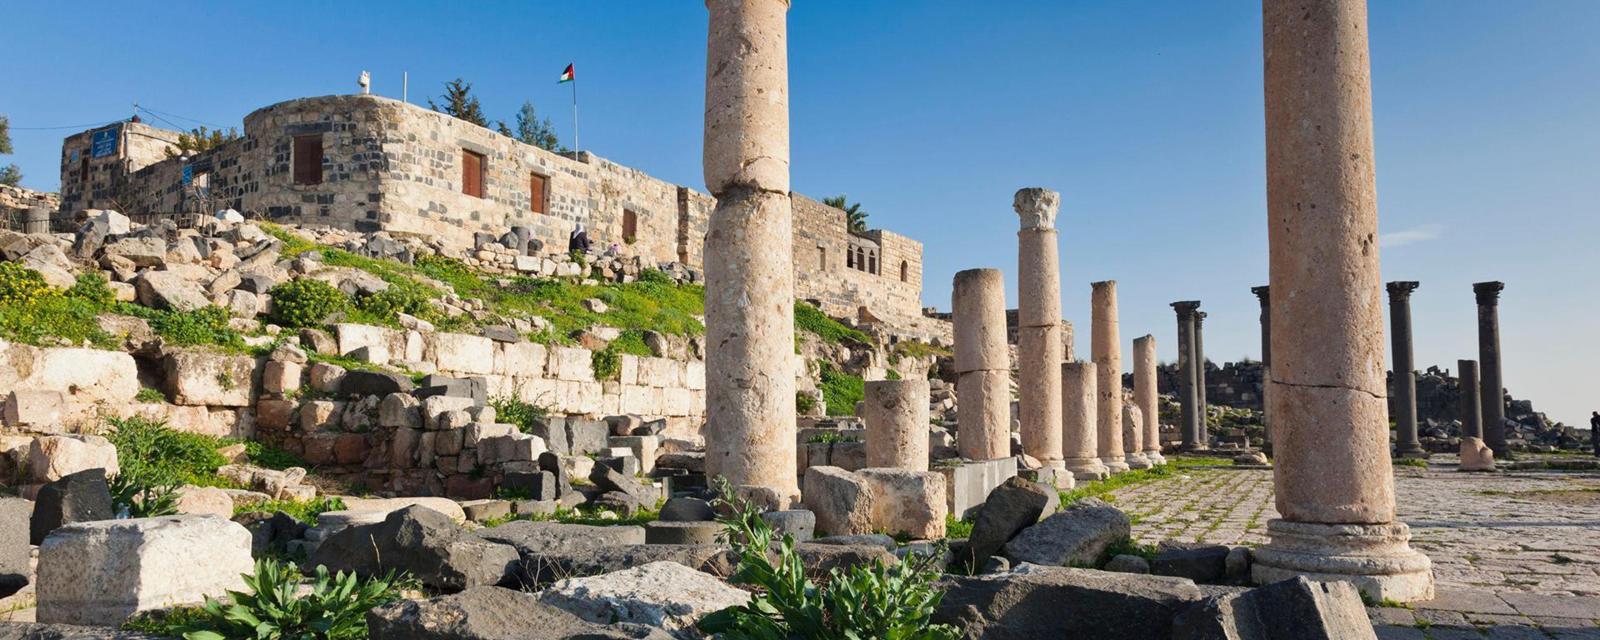 Jordans ancient town without a soul